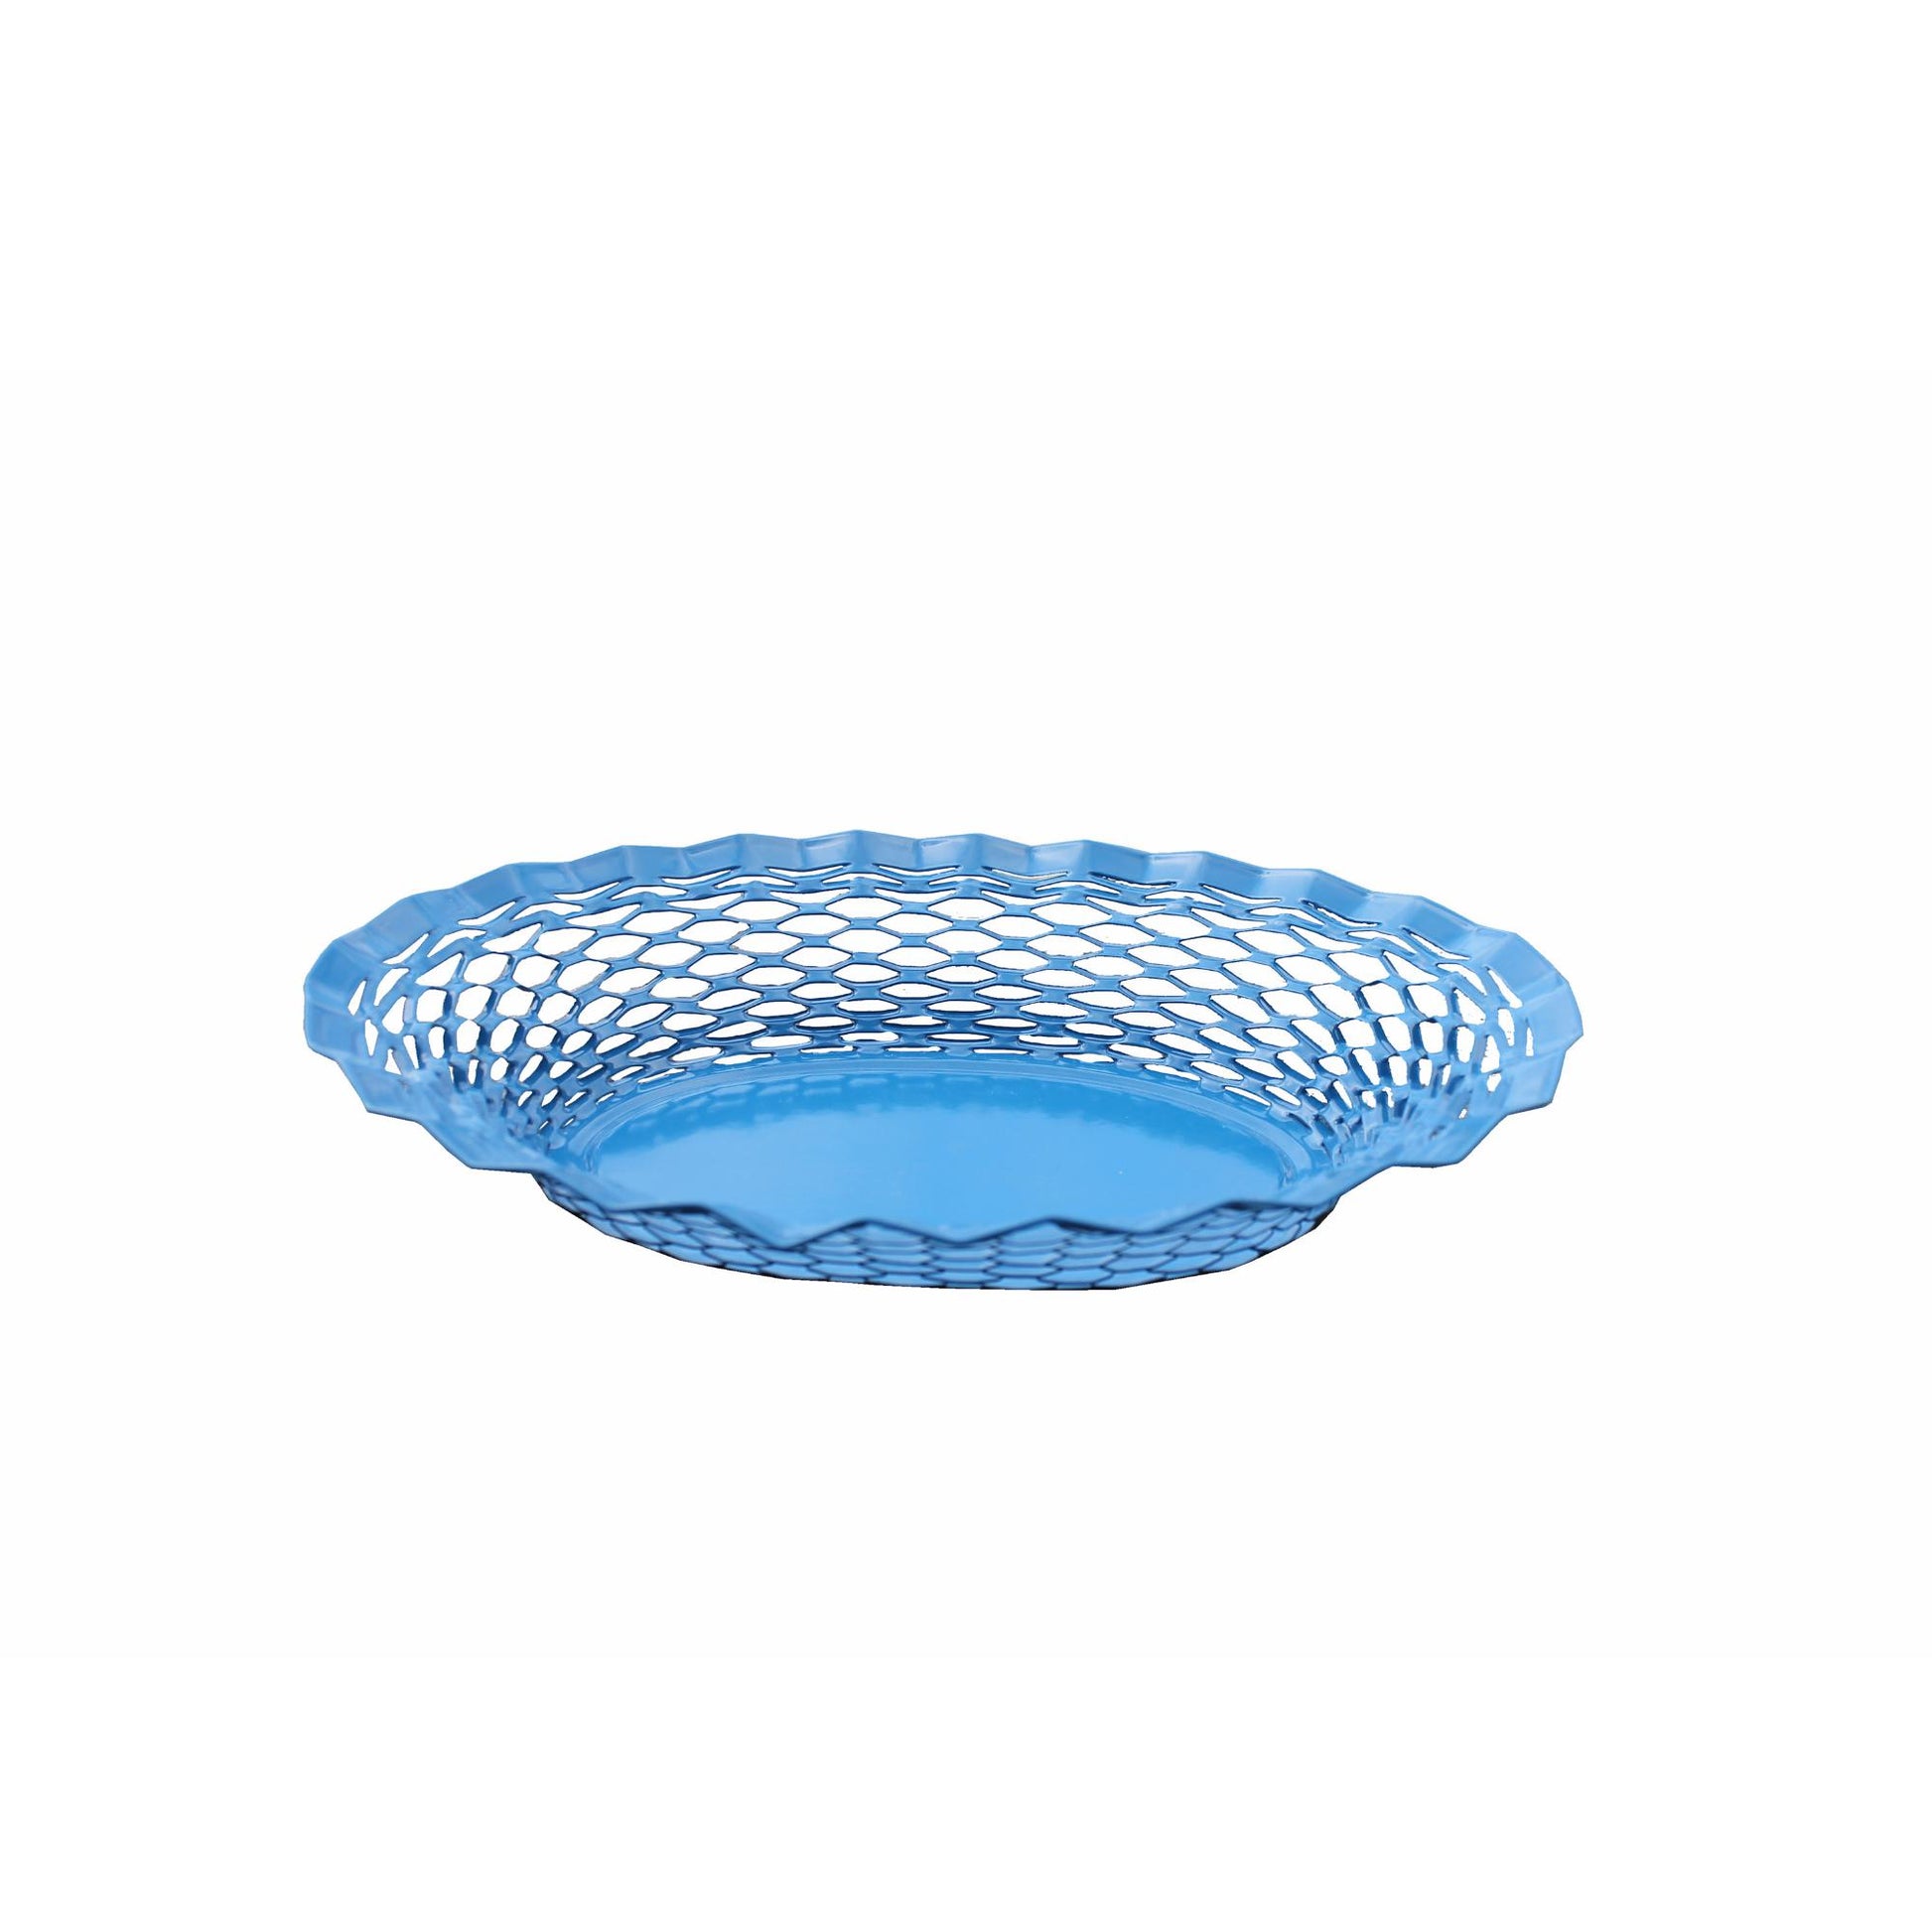 Metal Food Basket Large by Roger Orfèvre Kitchen ROGER ORFÈVRE Blue Prettycleanshop